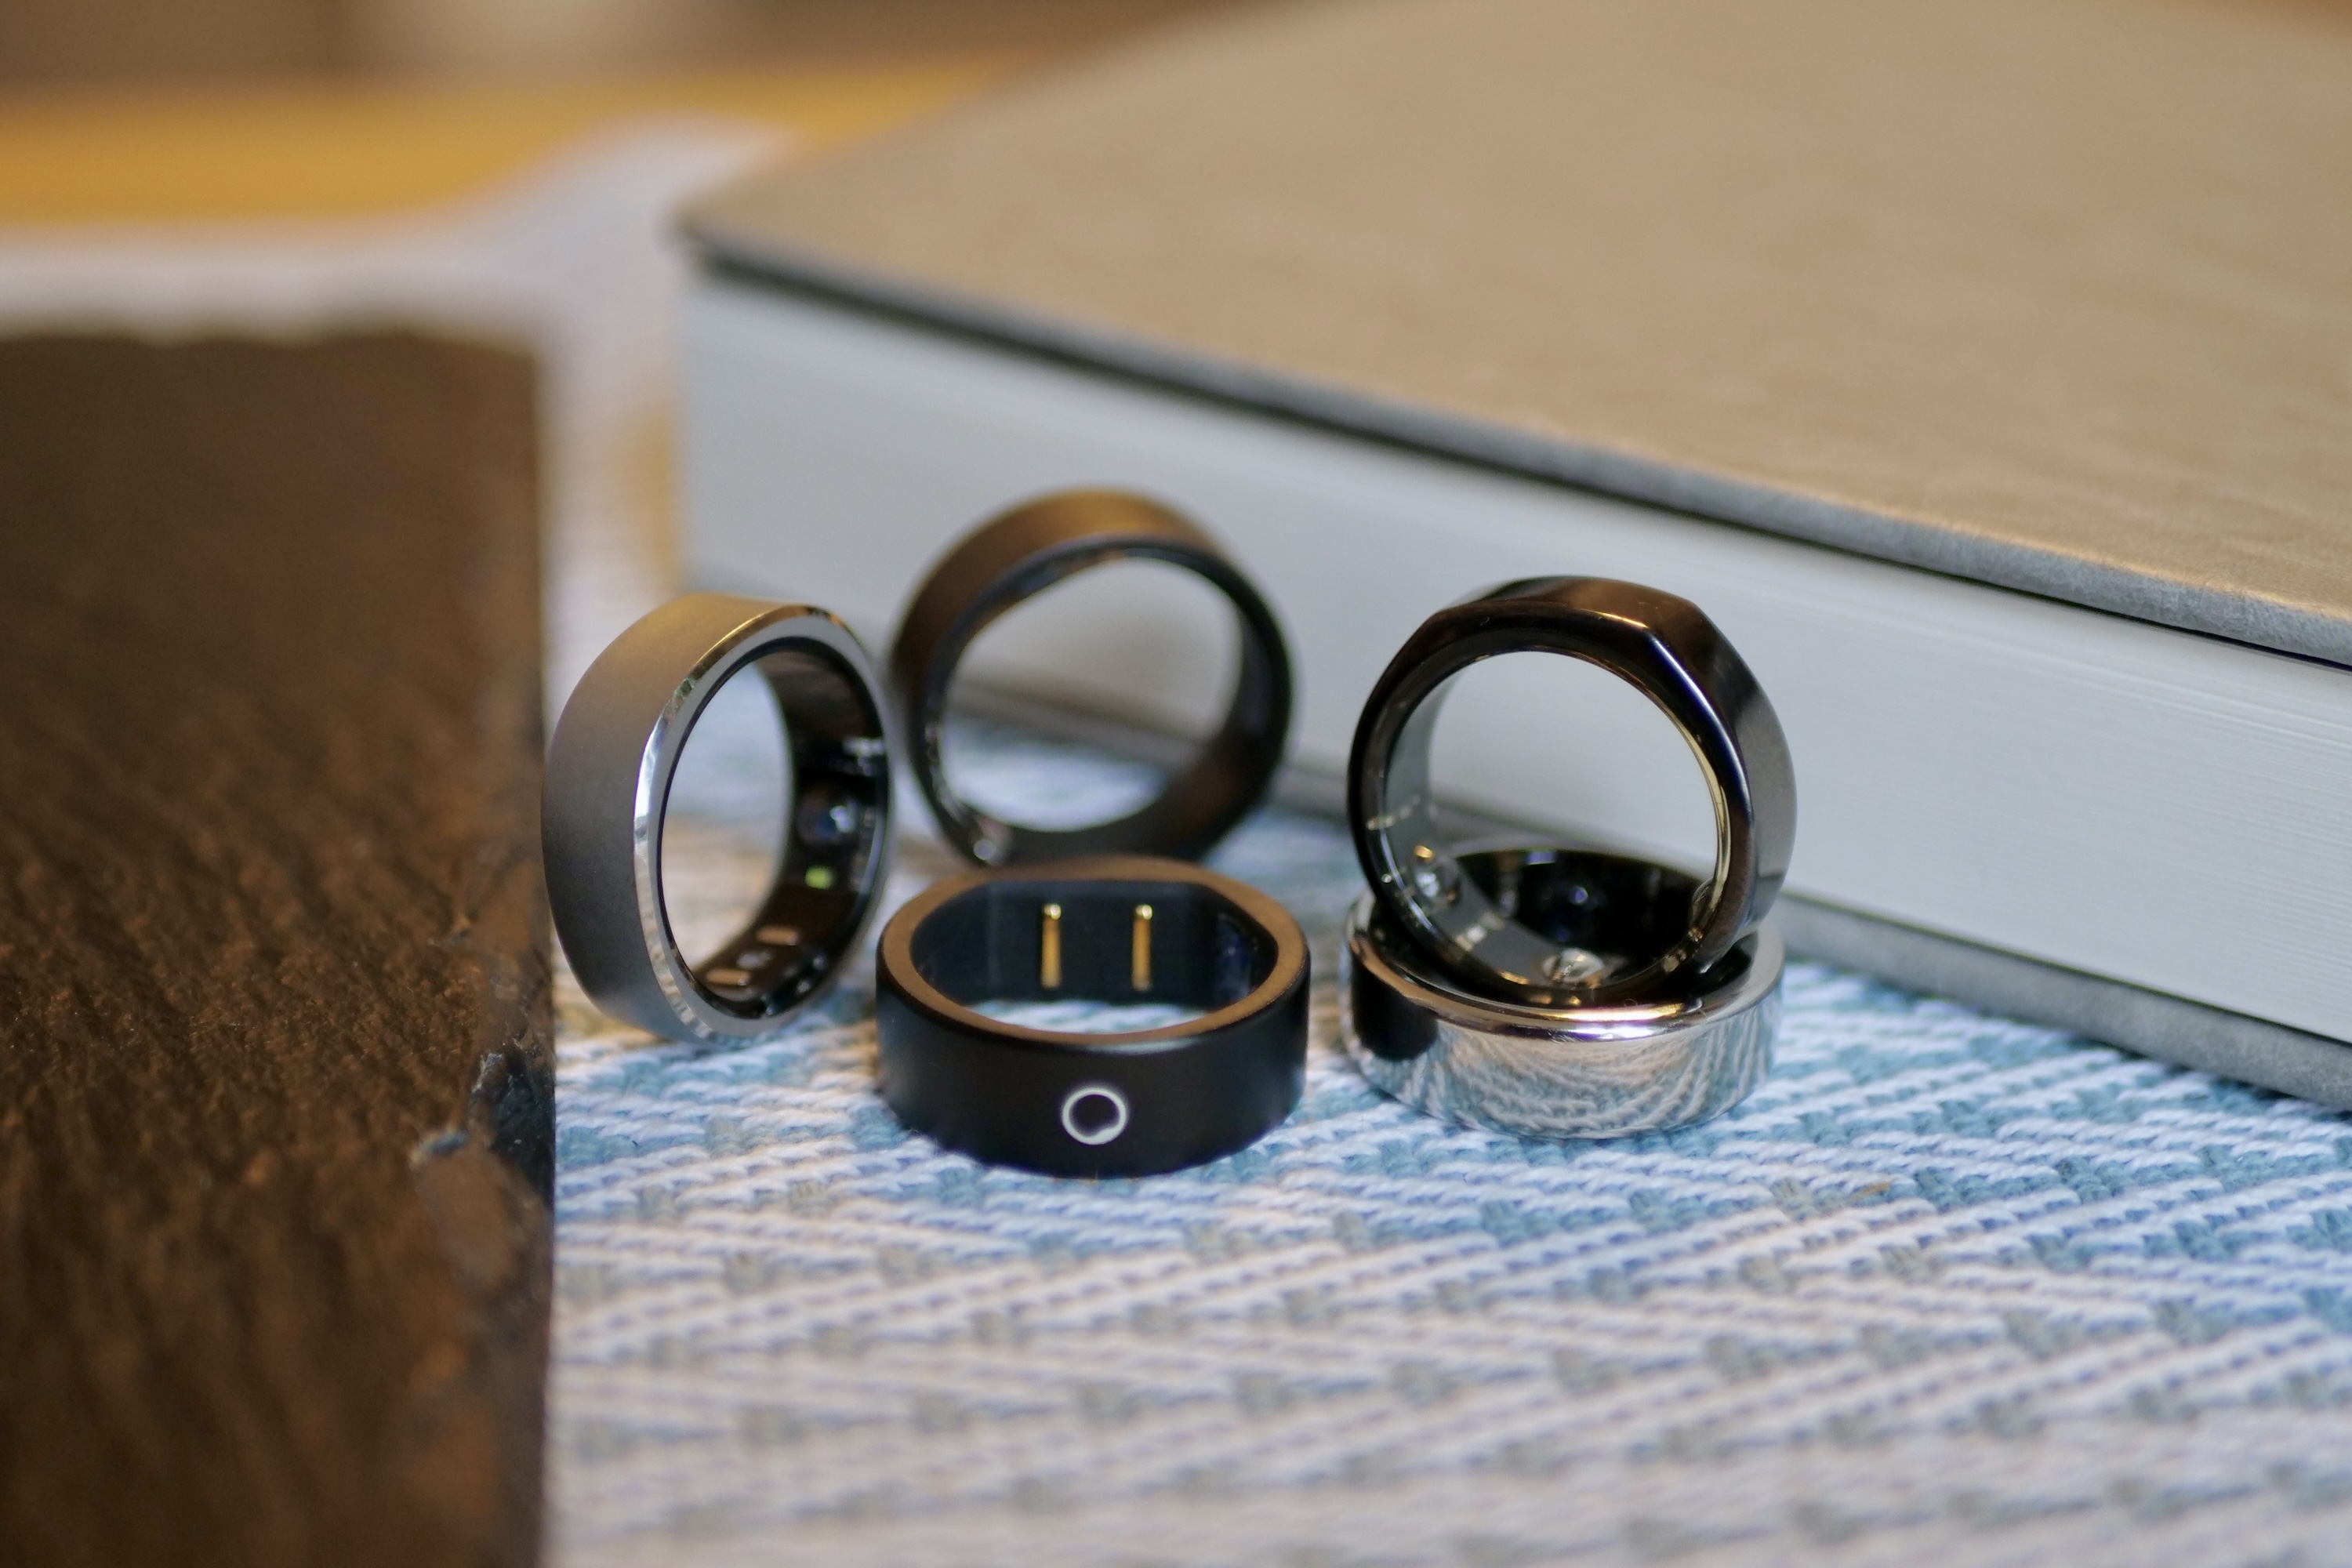 Best NFC Smart Ring Price RFID Carbon Fiber Finger Rings